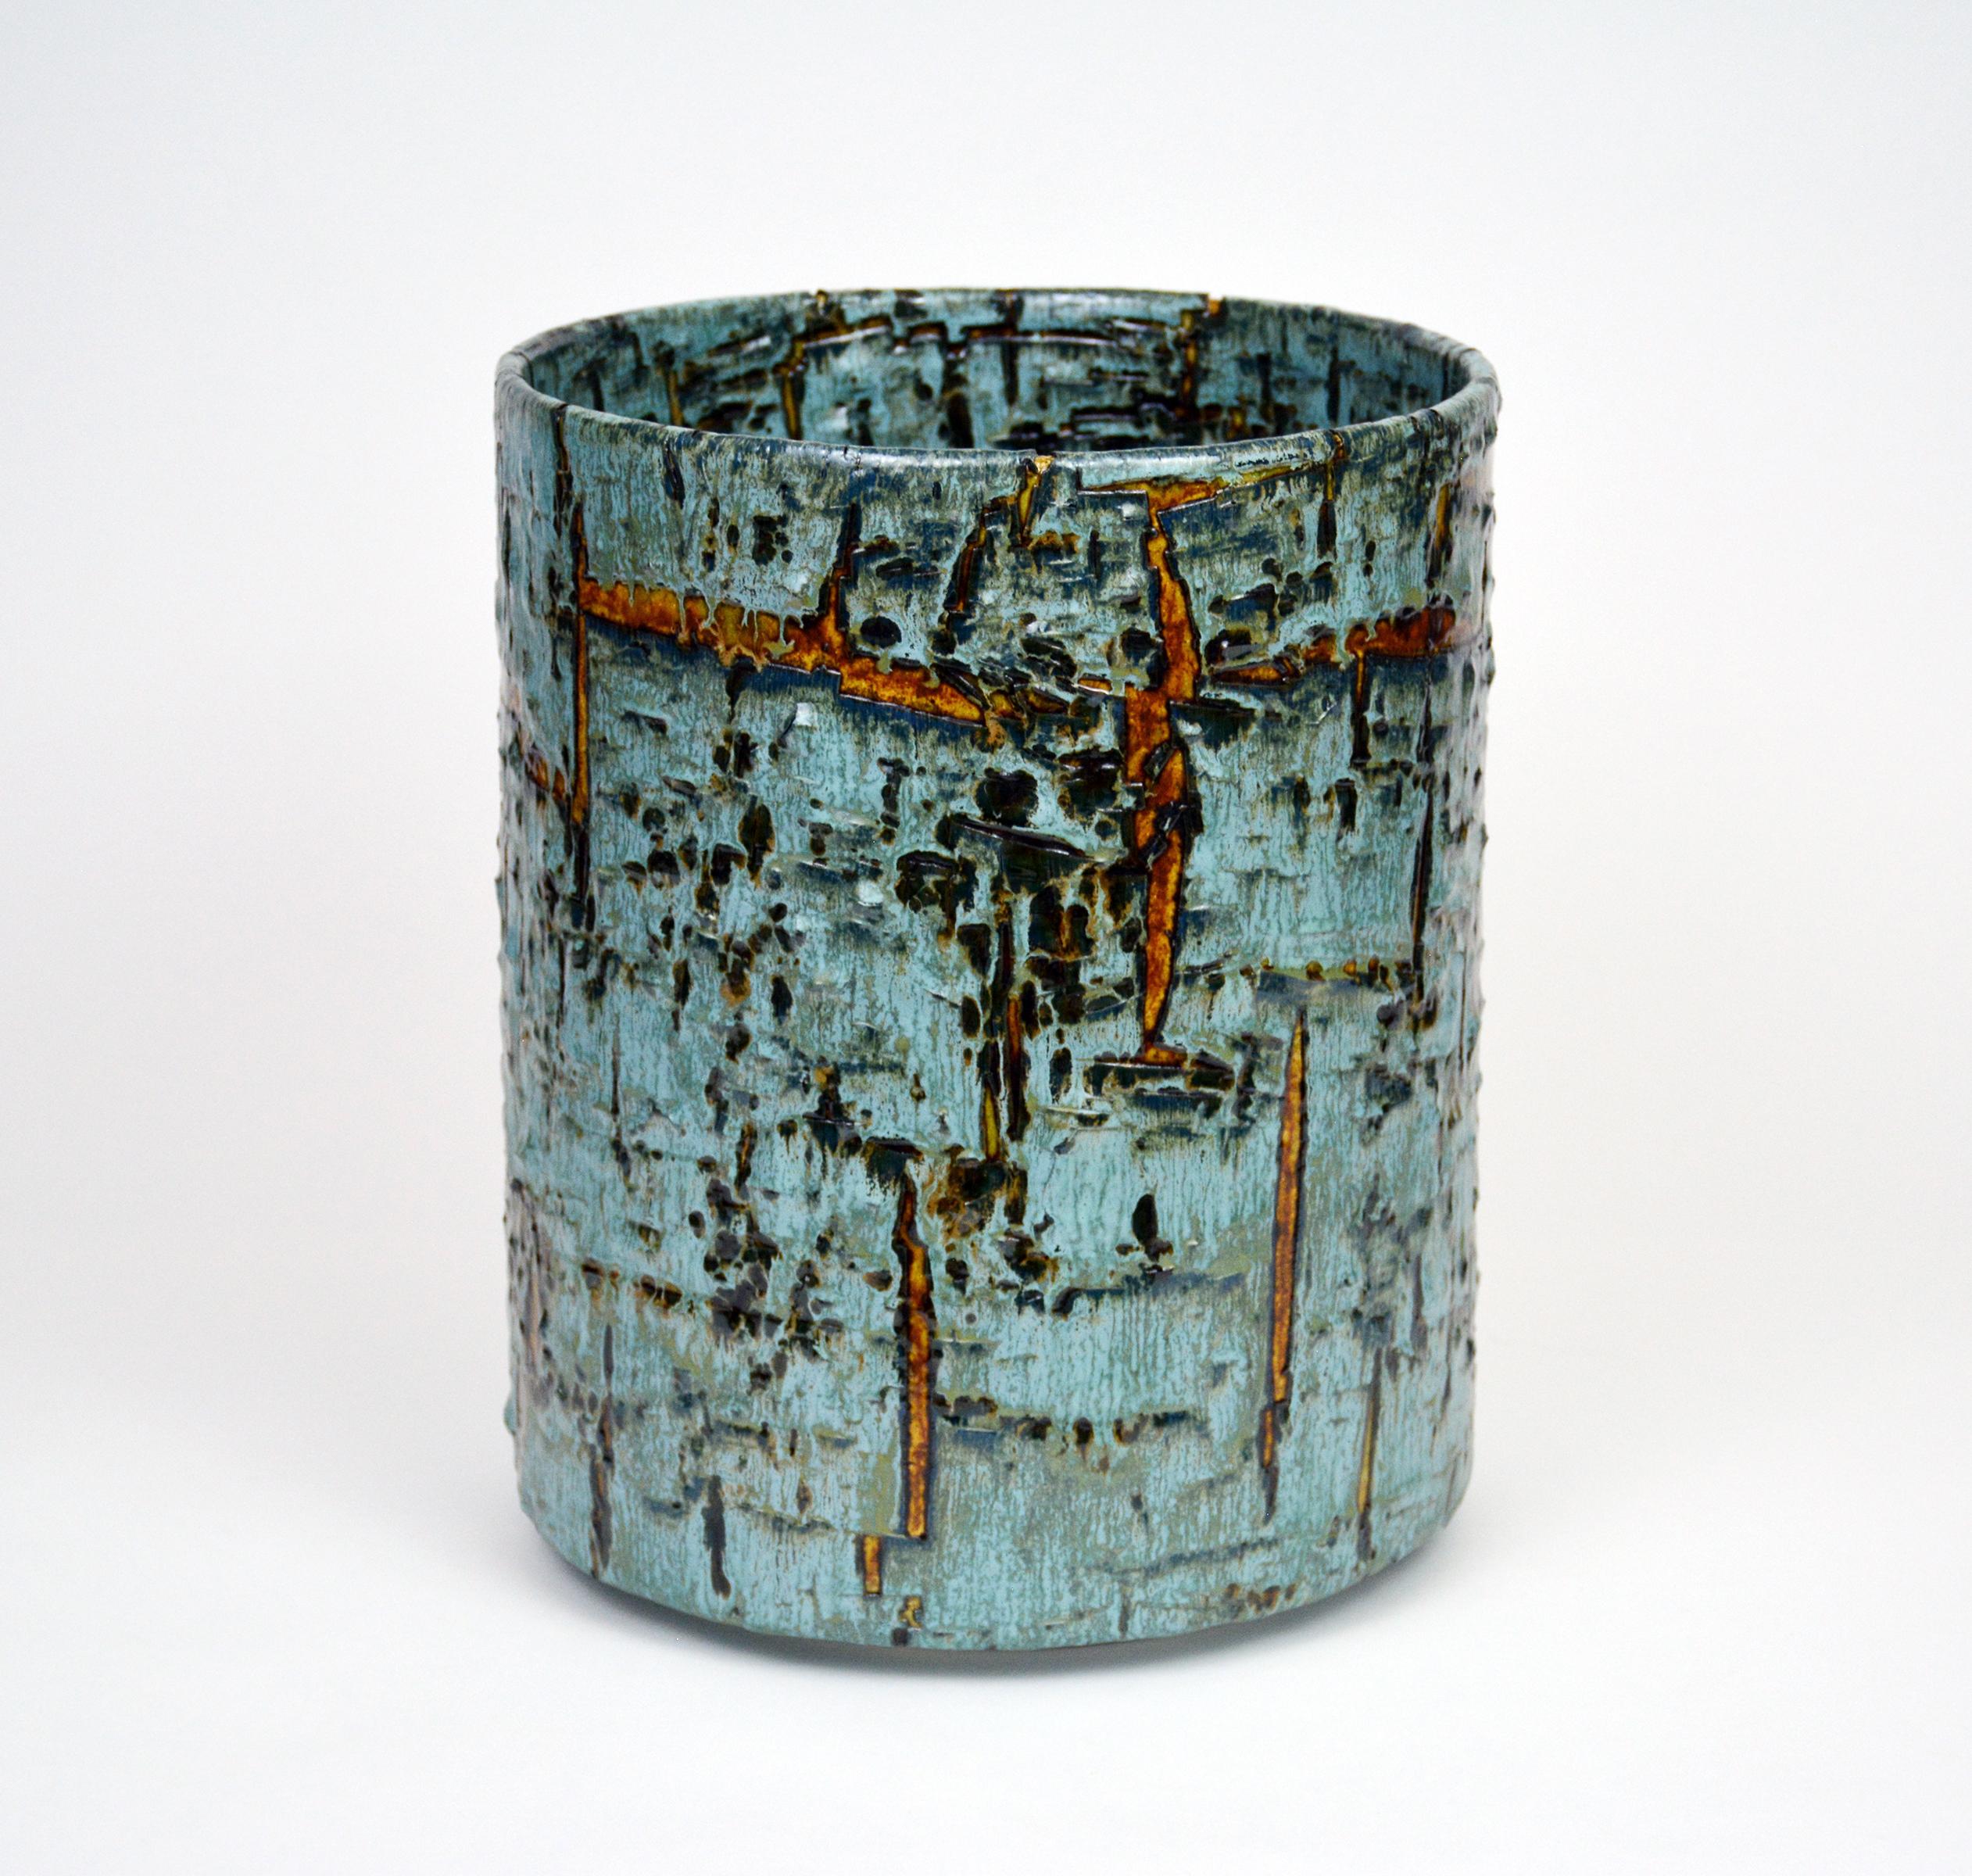 Zylindrische, glasierte Keramikskulptur von William Edwards
Handgefertigtes Steingutgefäß, mehrfach gebrannt, um eine strukturierte Oberfläche von zufälliger Abstraktion zu erhalten, in Blautönen mit bernsteinfarbener Glanzglasur, die